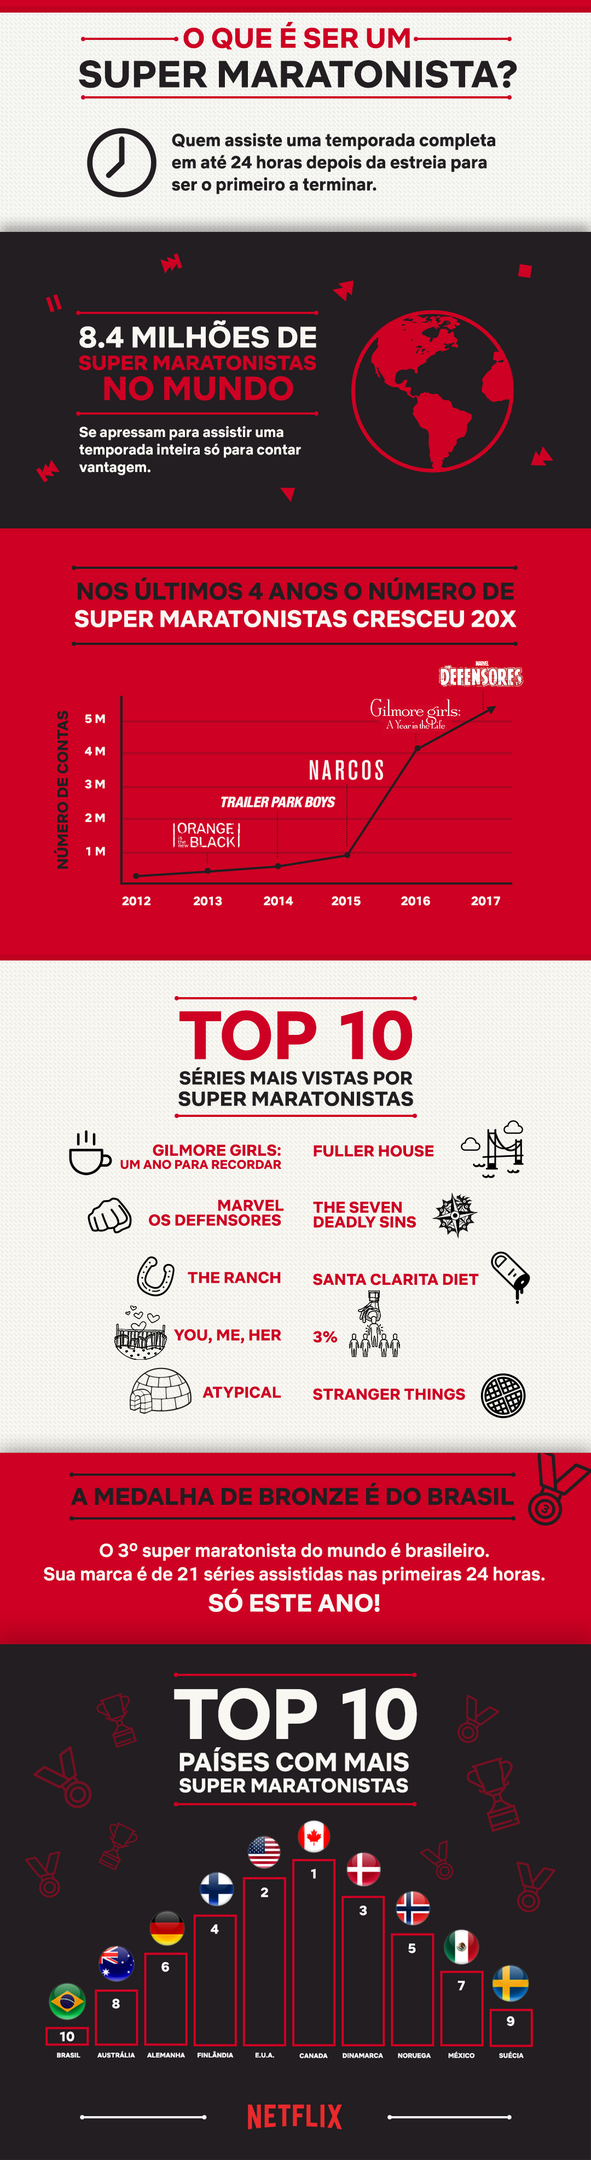 Netflix faz gráfico que mostra quais séries são assistidas em maratona